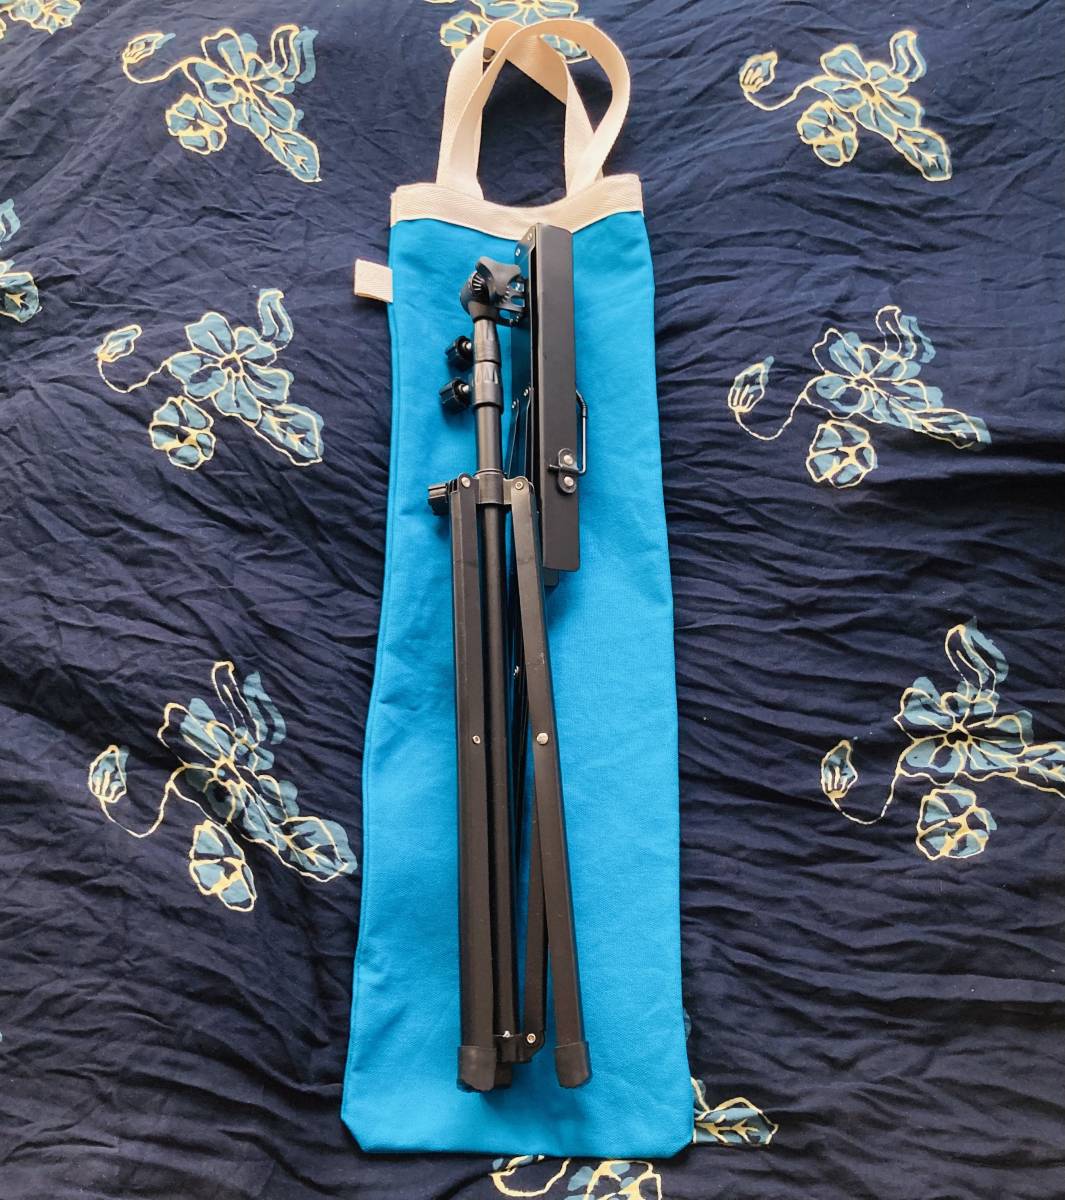 MORI пюпитр для сумка пюпитр кейс брезент Sky голубой пустой цвет музыкальные инструменты длина длина сумка musicstand bag